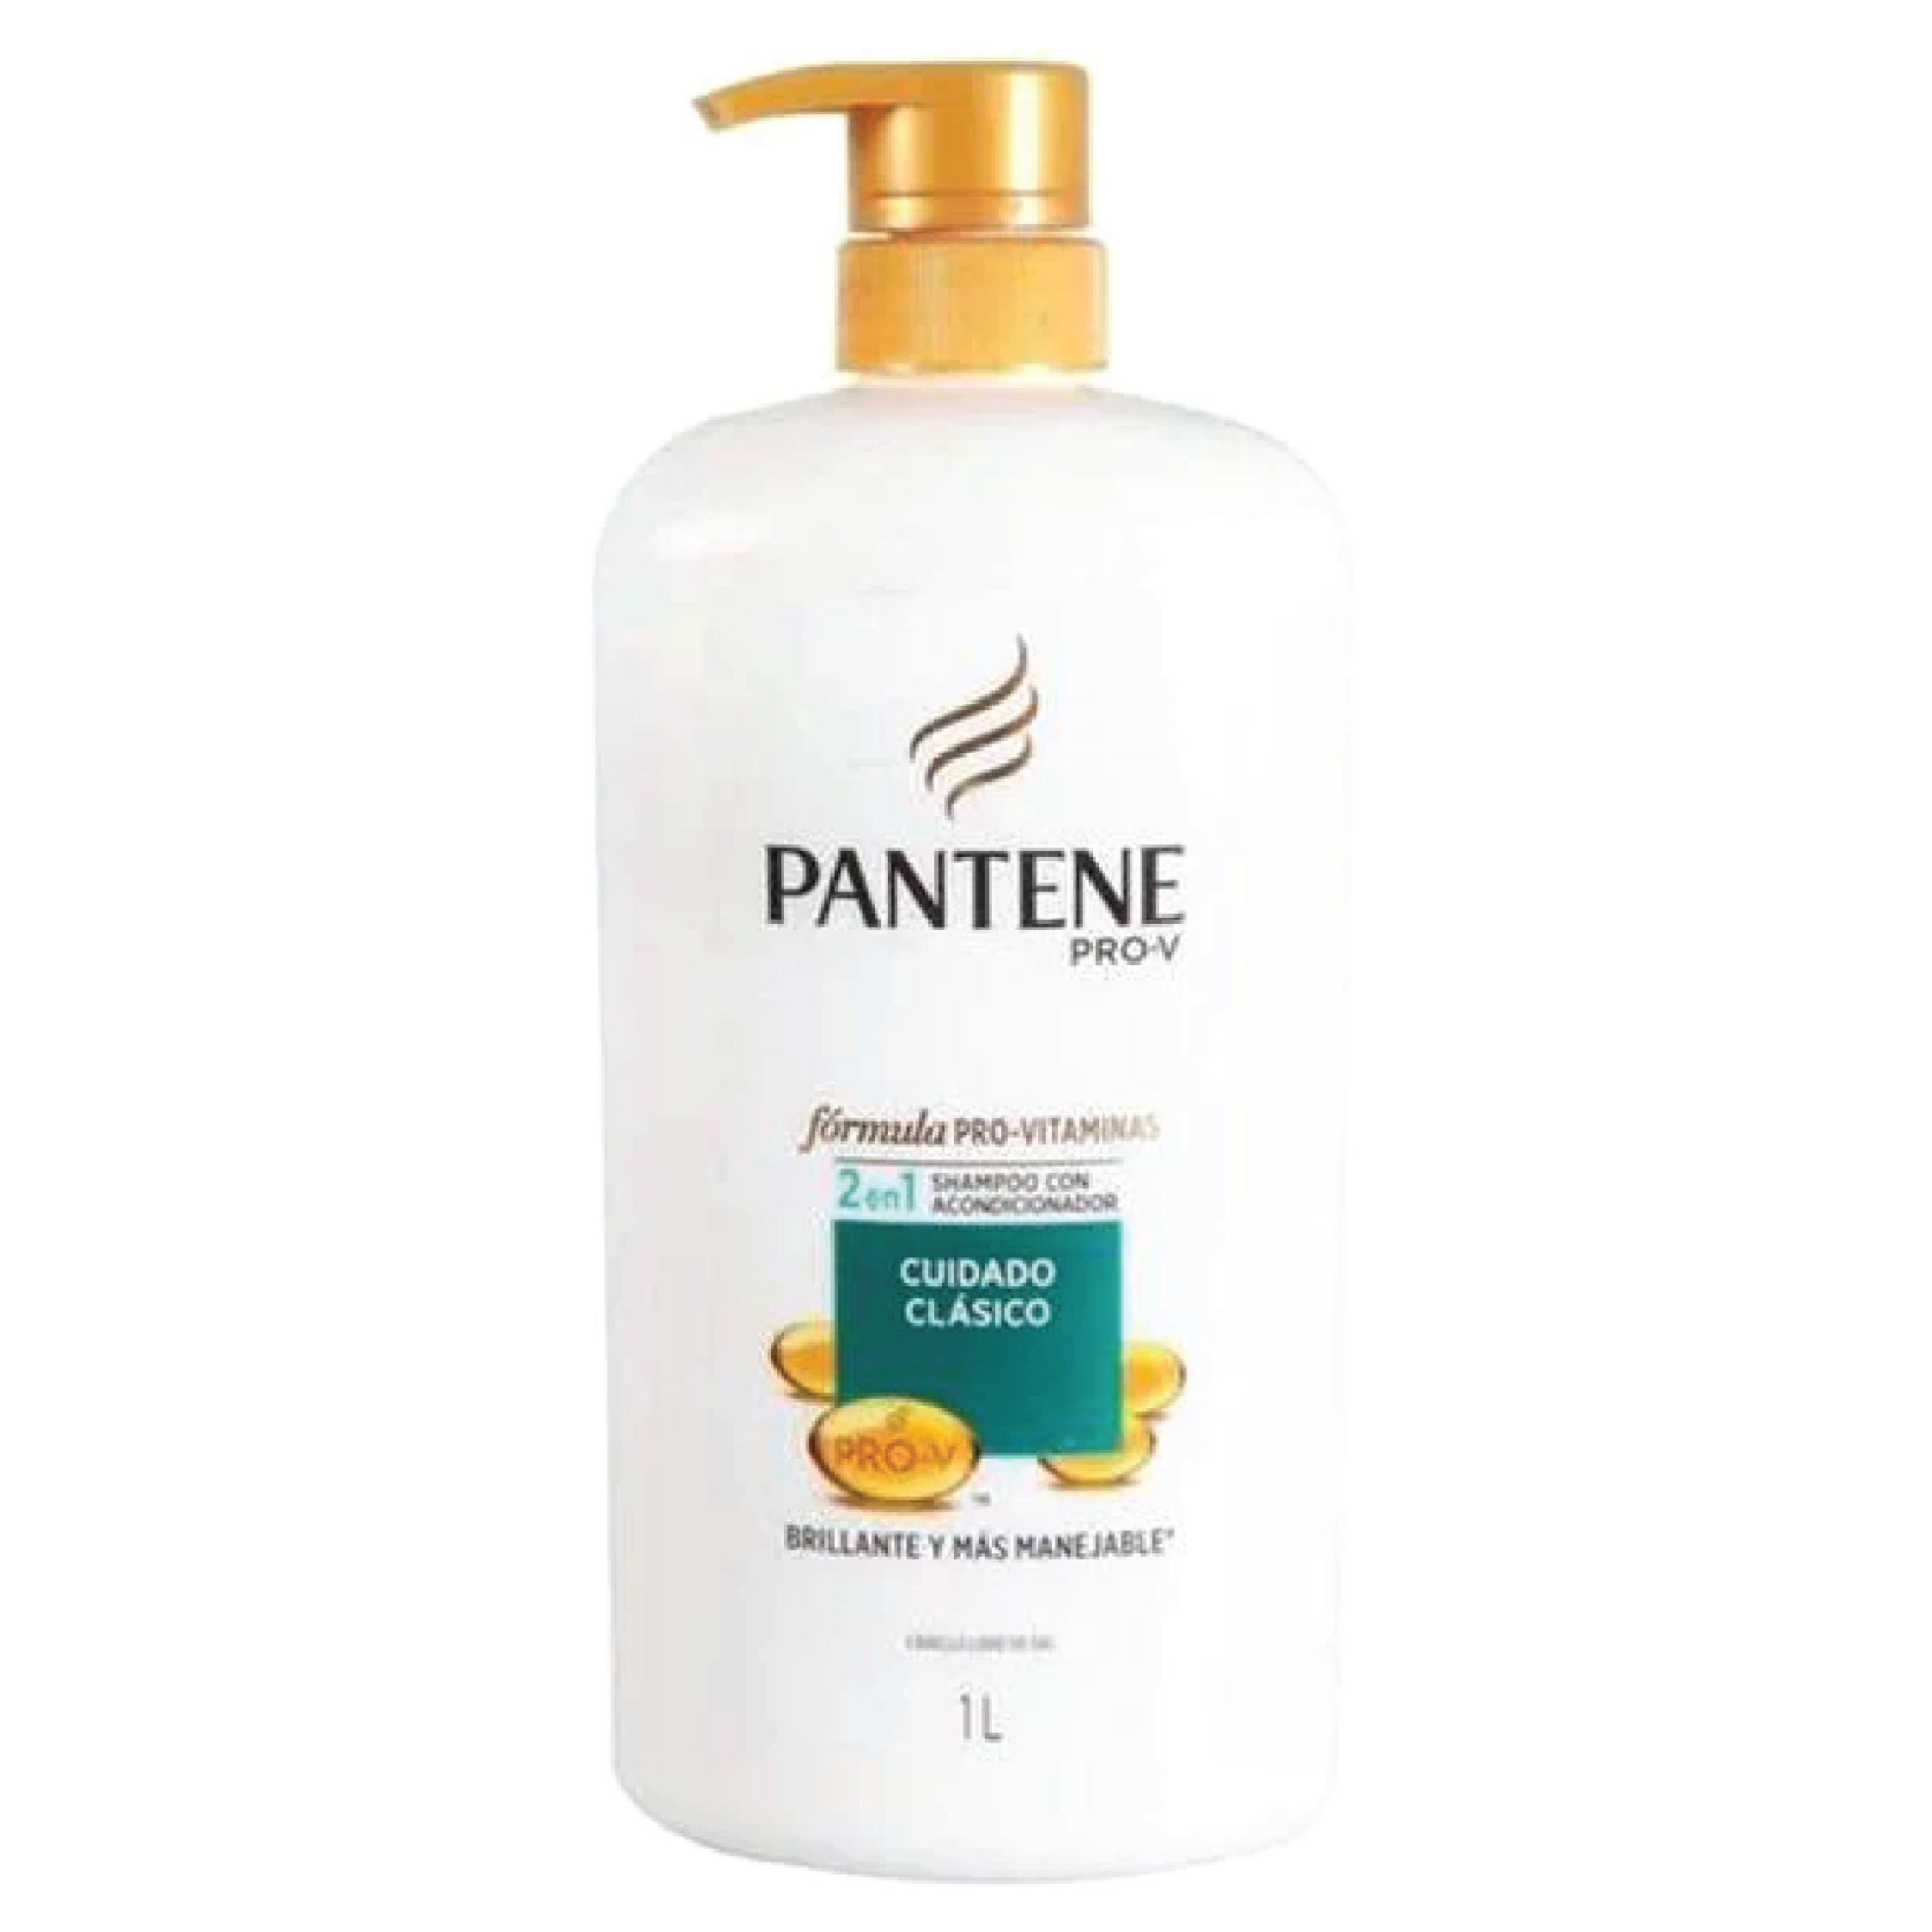 Pantene Pro-V 2in1 Cuidado Clasico Shampoo 1L